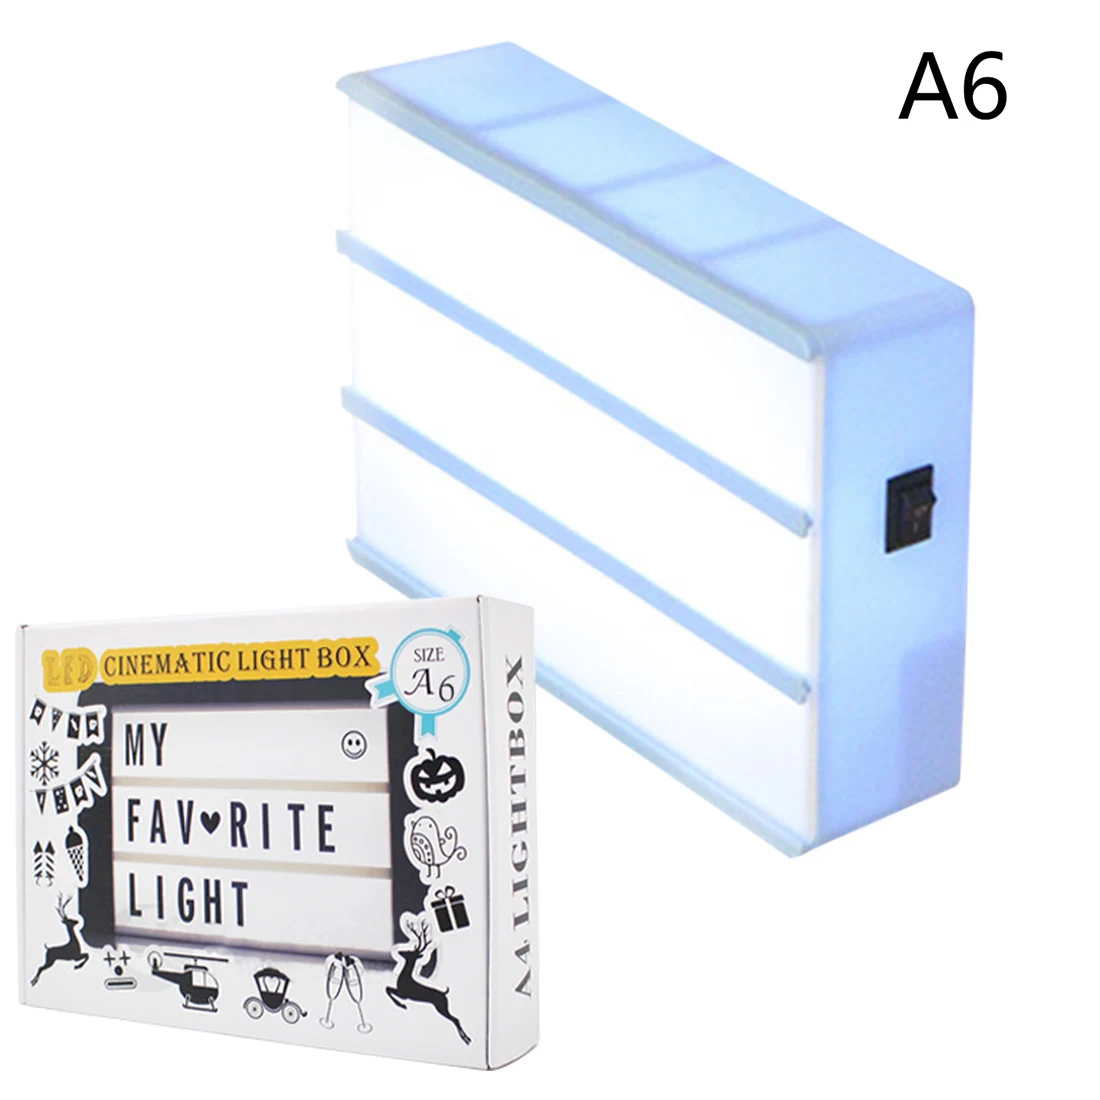 A6 размер AAA батарея светодиодный Ночной светильник, коробка DIY буквы, символ, украшение для открыток, лампа, доска для сообщений, светильник, коробка - Испускаемый цвет: Зеленый